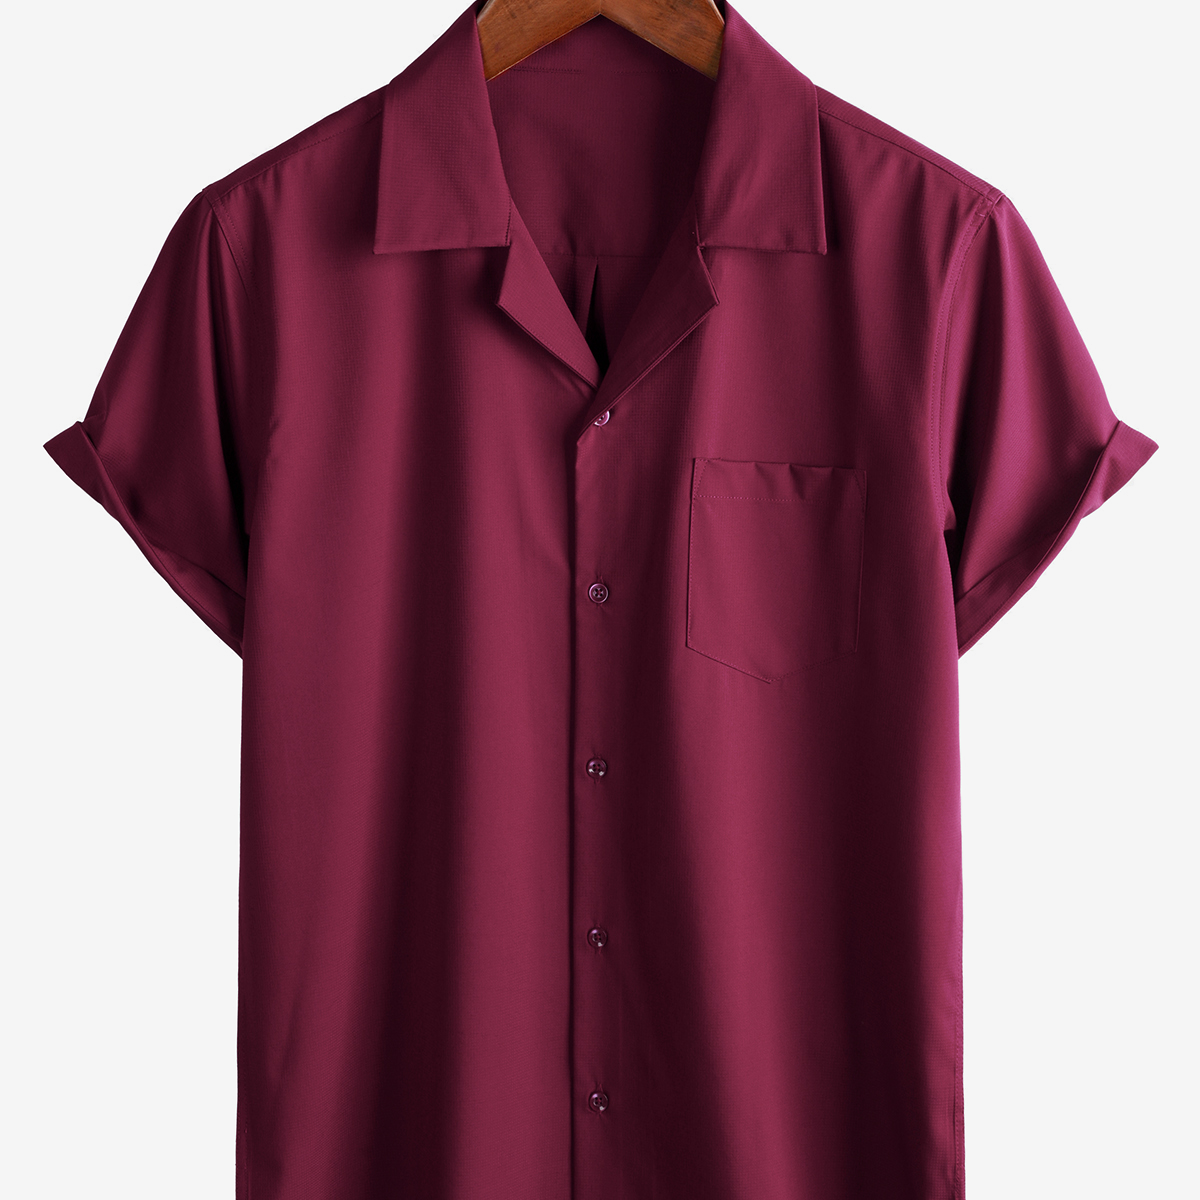 Men's Casual Pocket Plain Short Sleeve Button Up Summer Beach Shirt